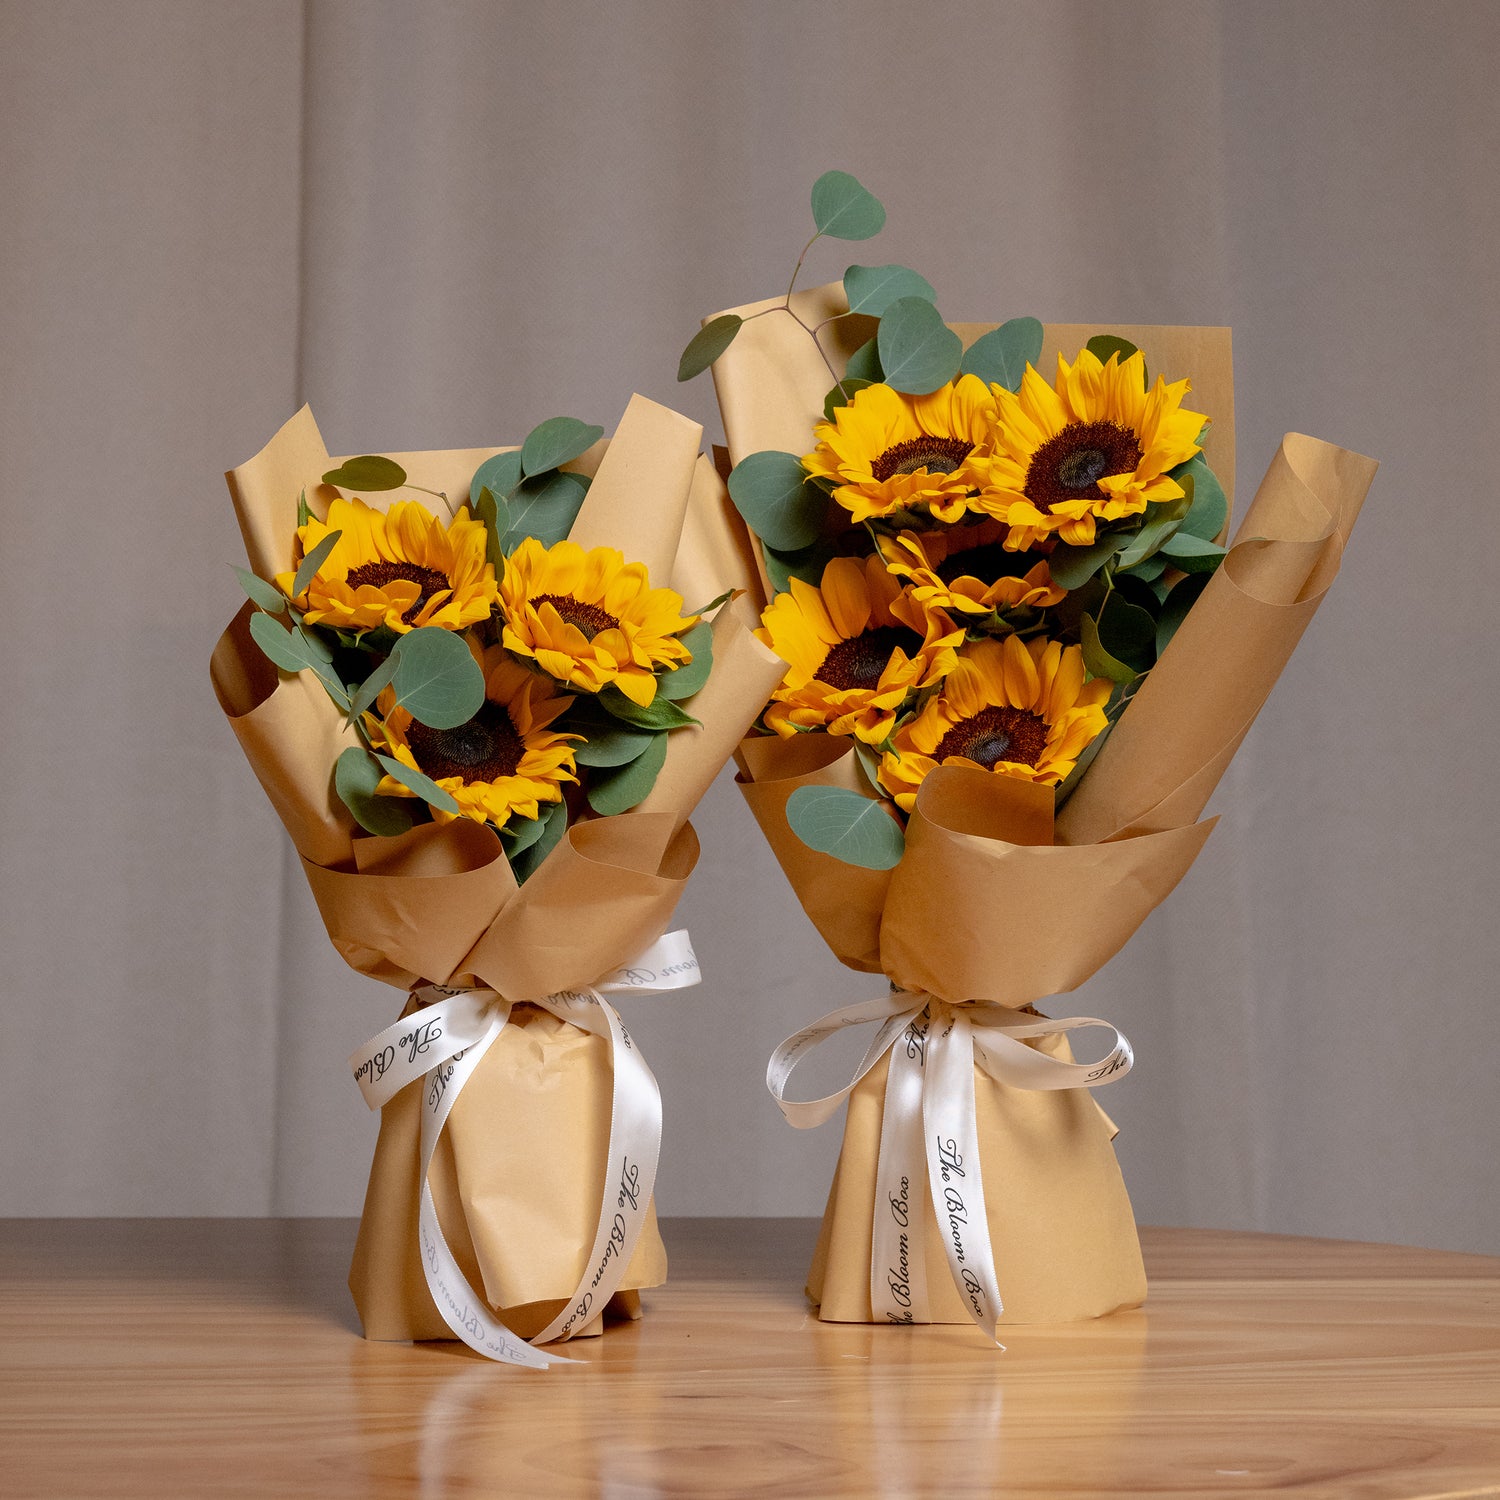 Sunburst Sunflowers Bouquet